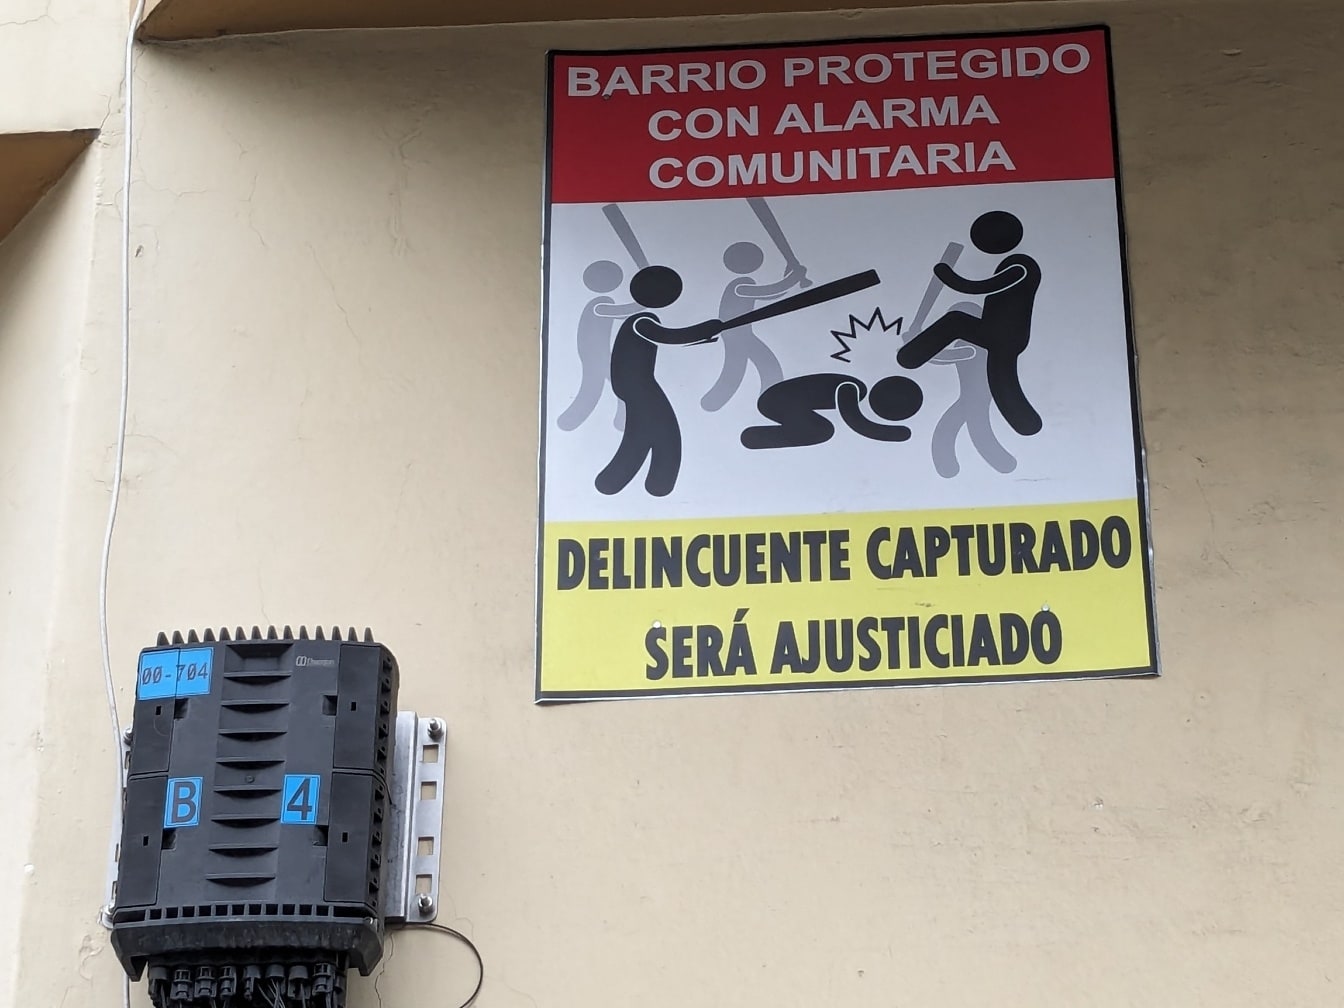 Tanda peringatan terhadap penjahat dan bandit dengan tulisan berbahasa Spanyol di dinding